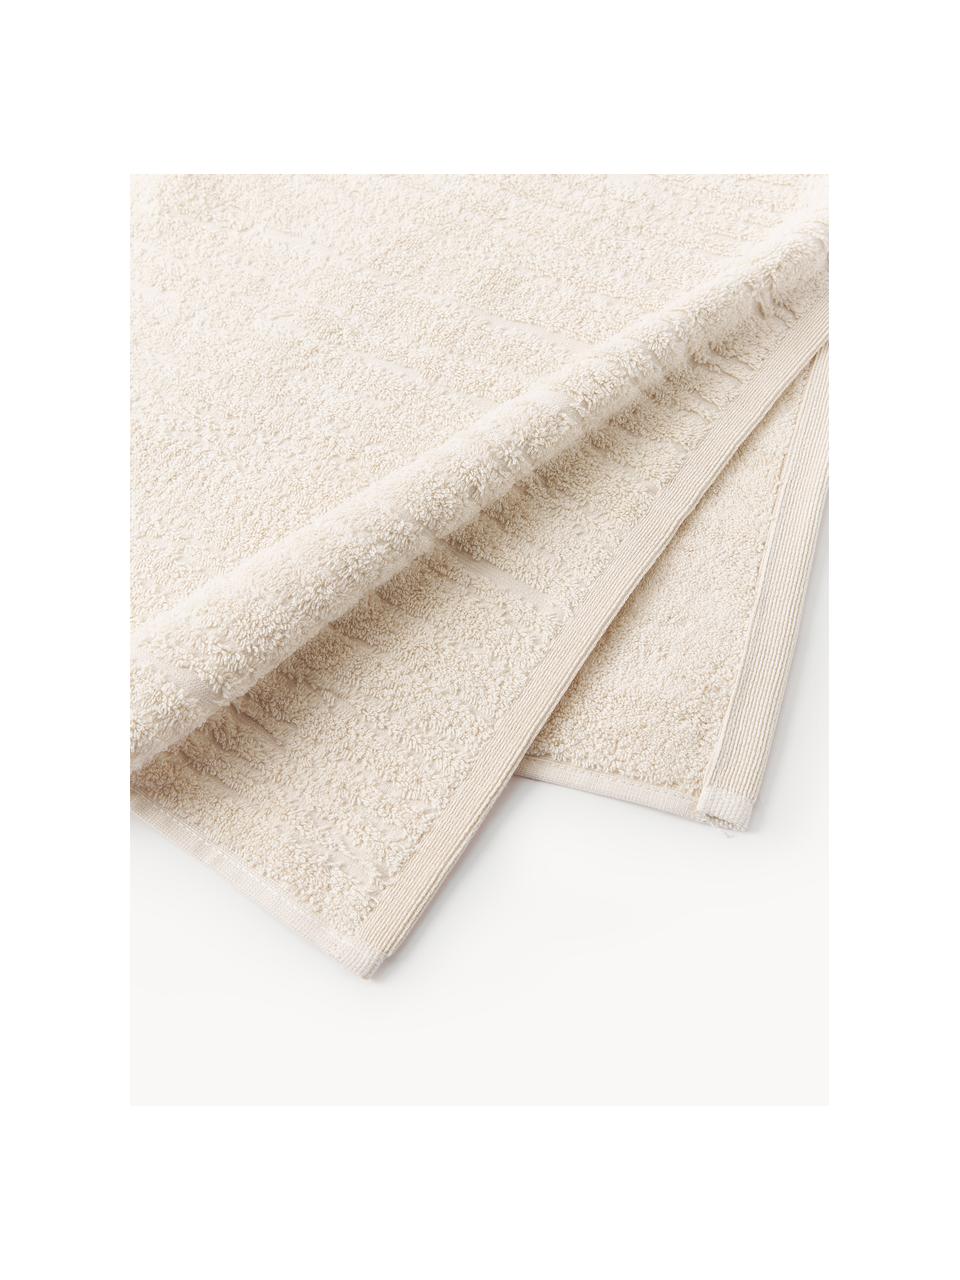 Baumwoll-Handtuch Audrina, in verschiedenen Größen, Hellbeige, Handtuch, B 50 x L 100 cm, 2 Stück